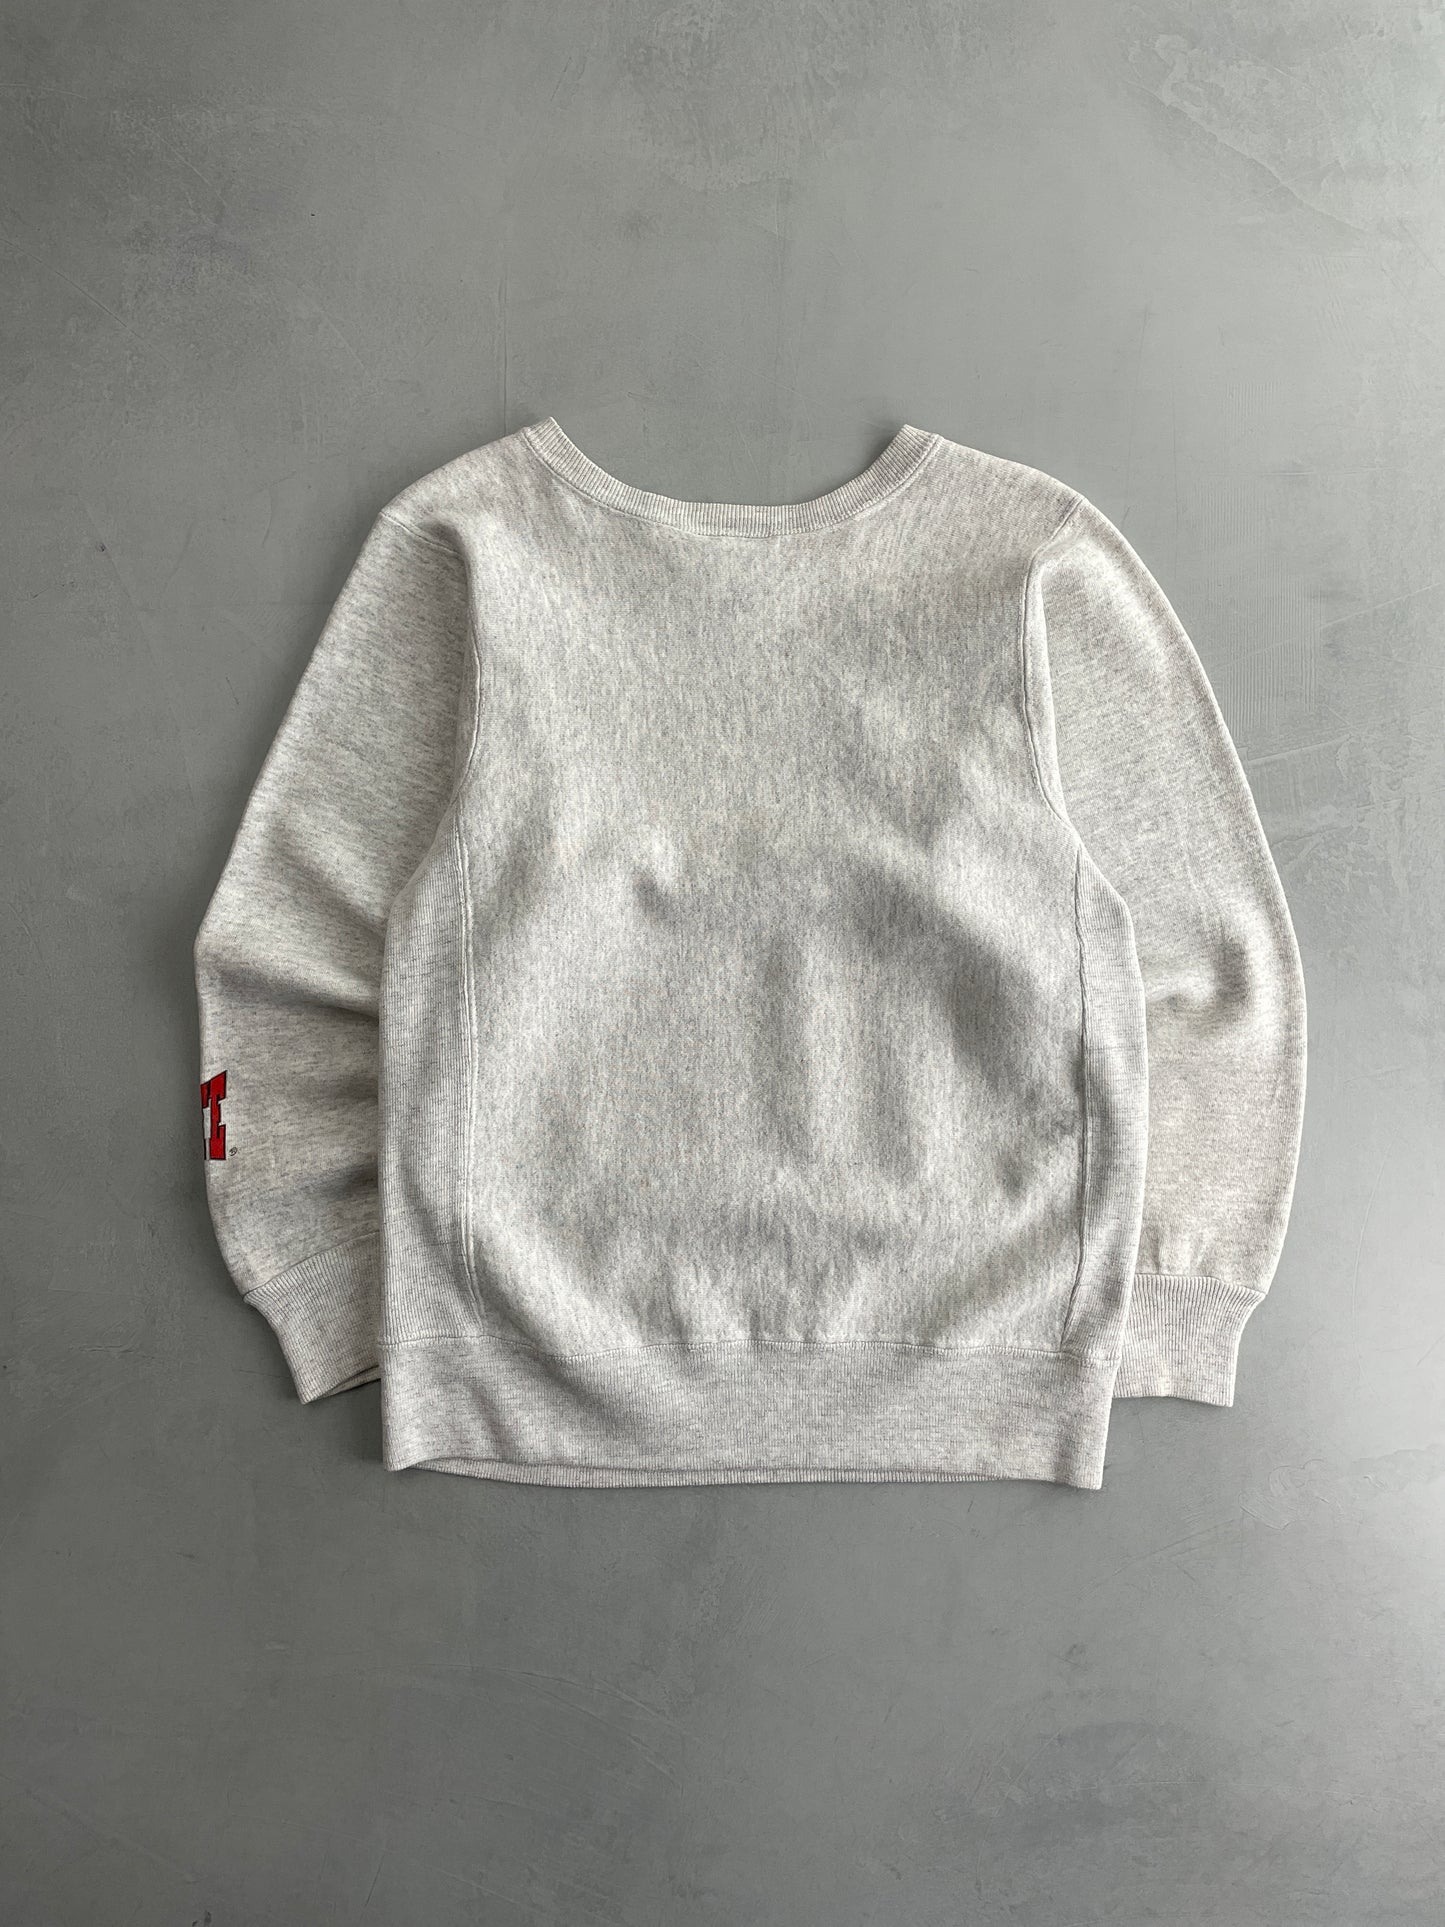 Ohio State Sweatshirt [M]